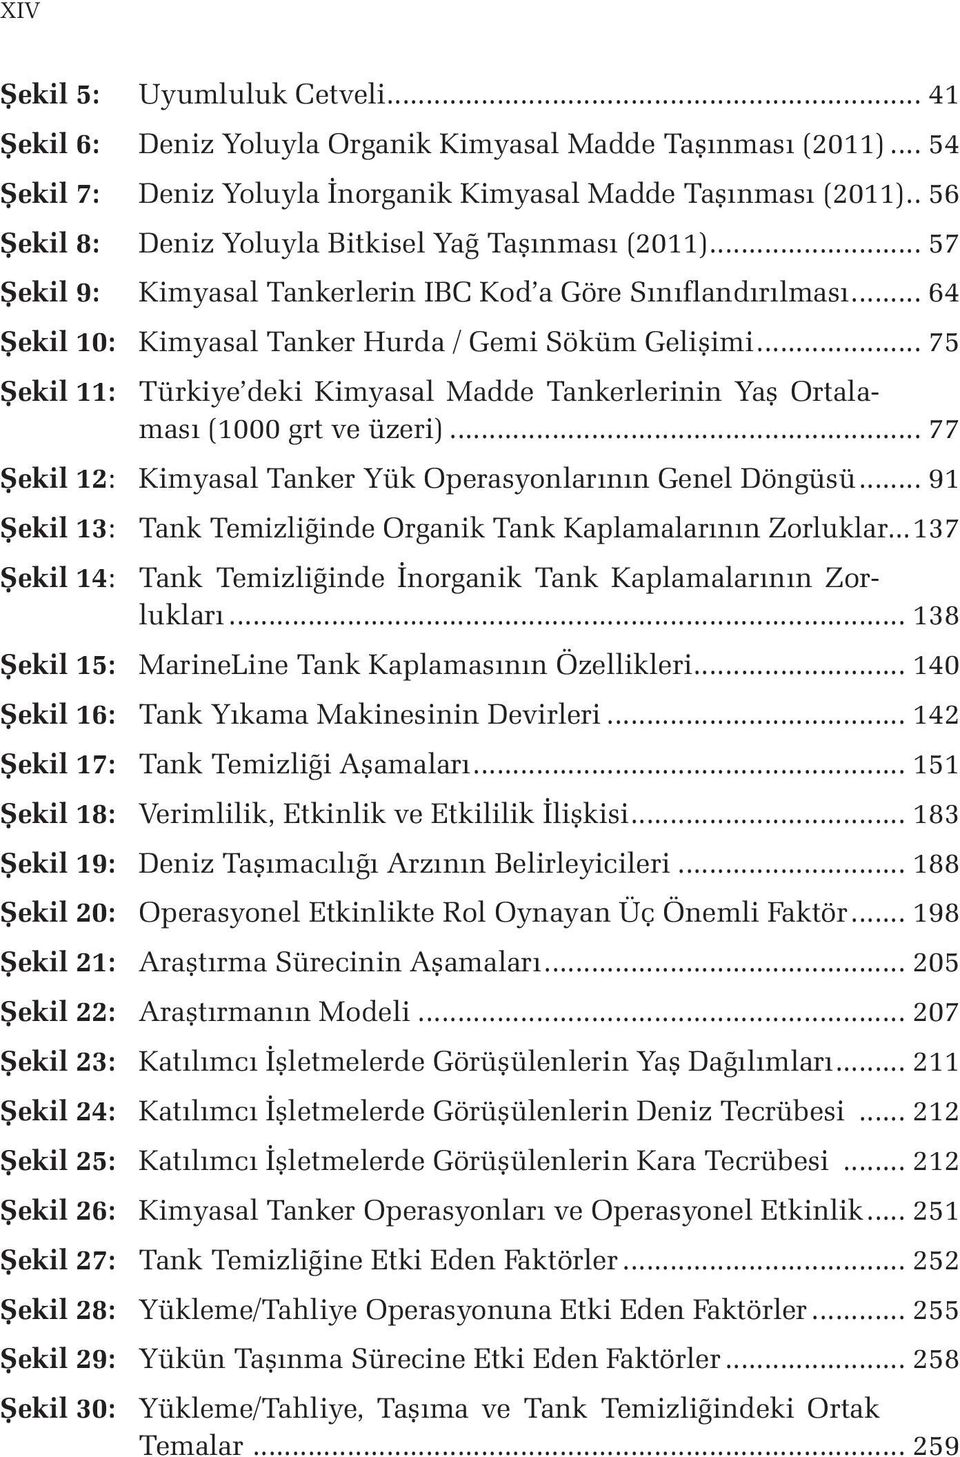 .. 75 Şekil 11: Türkiye deki Kimyasal Madde Tankerlerinin Yaş Ortalaması (1000 grt ve üzeri)... 77 Şekil 12: Kimyasal Tanker Yük Operasyonlarının Genel Döngüsü.